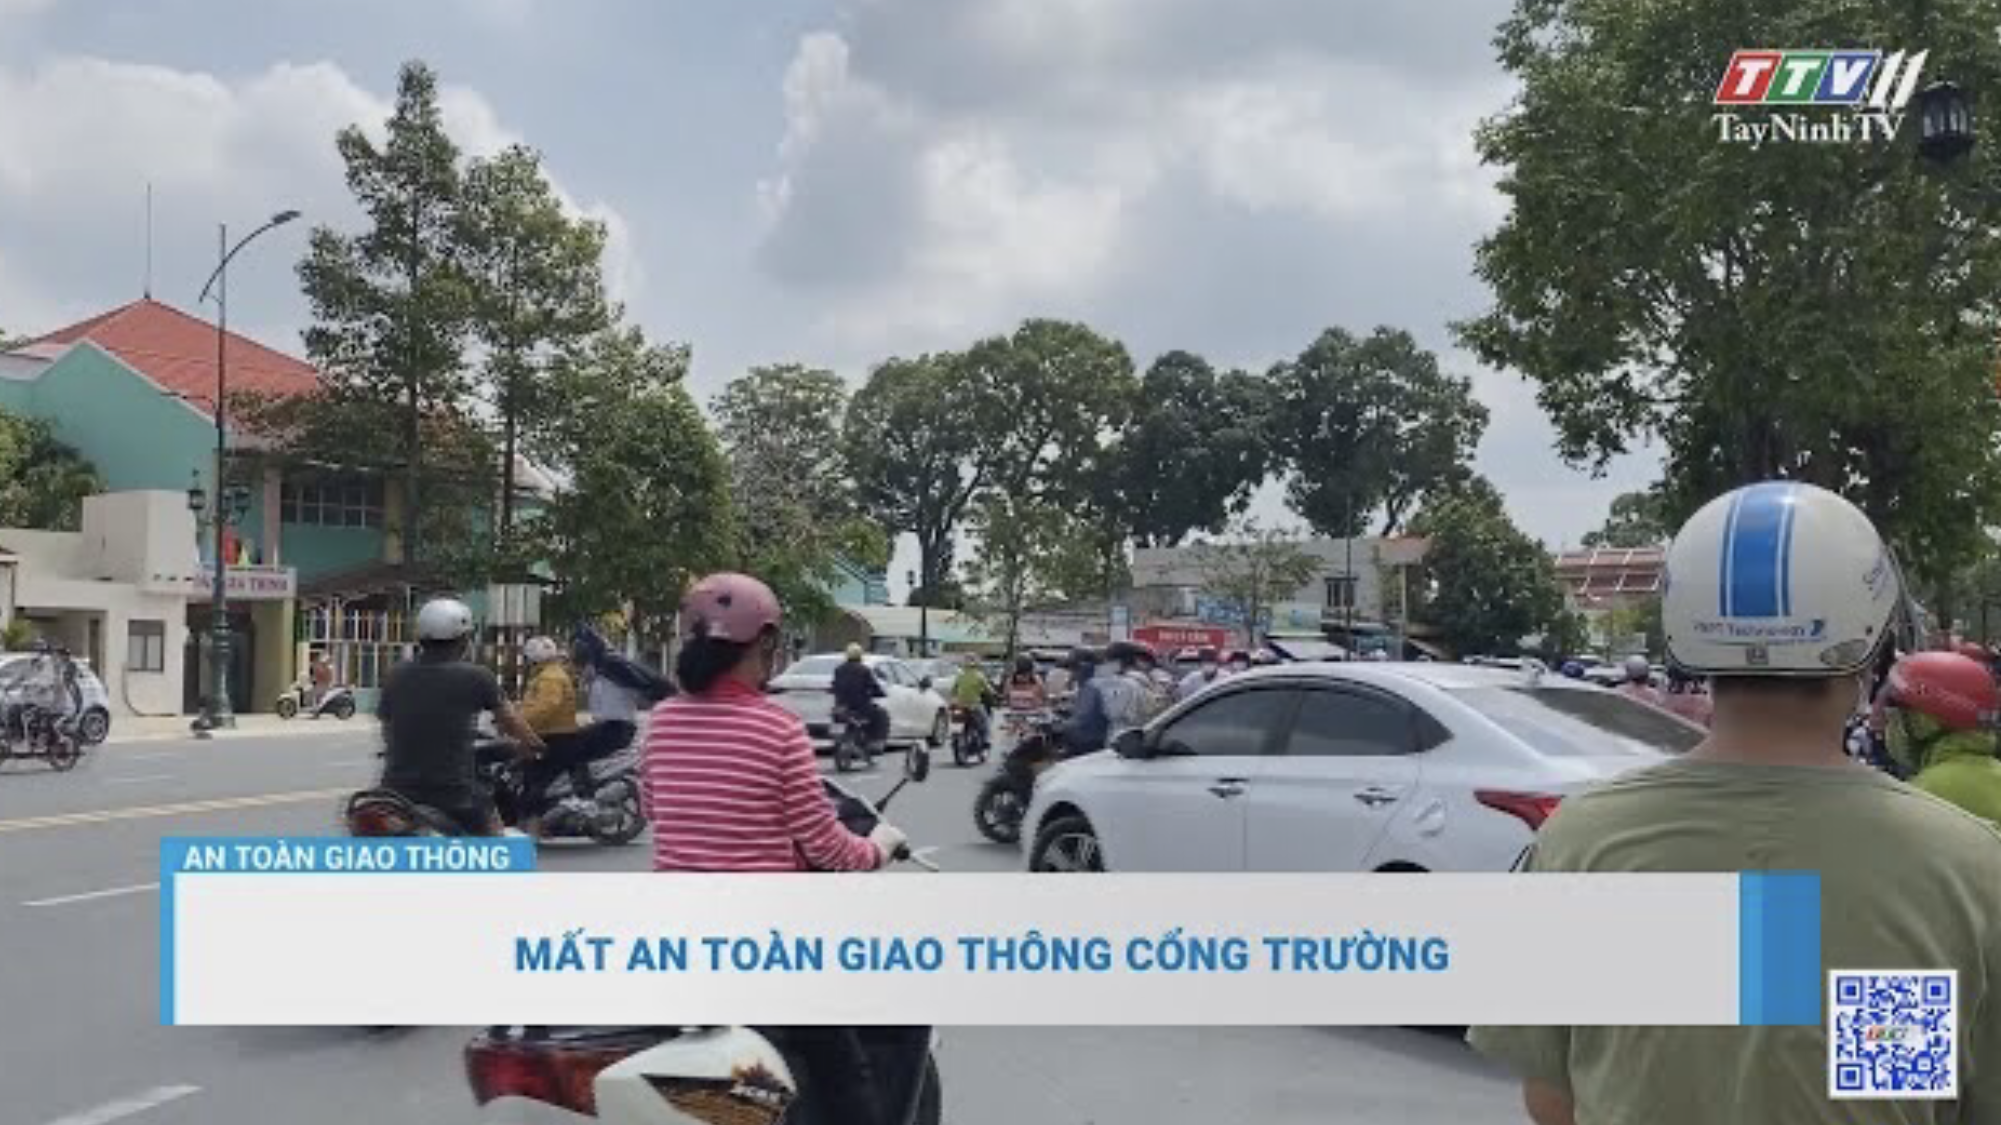 Mất an toàn giao thông cổng trường | An toàn giao thông | TayNinhTV